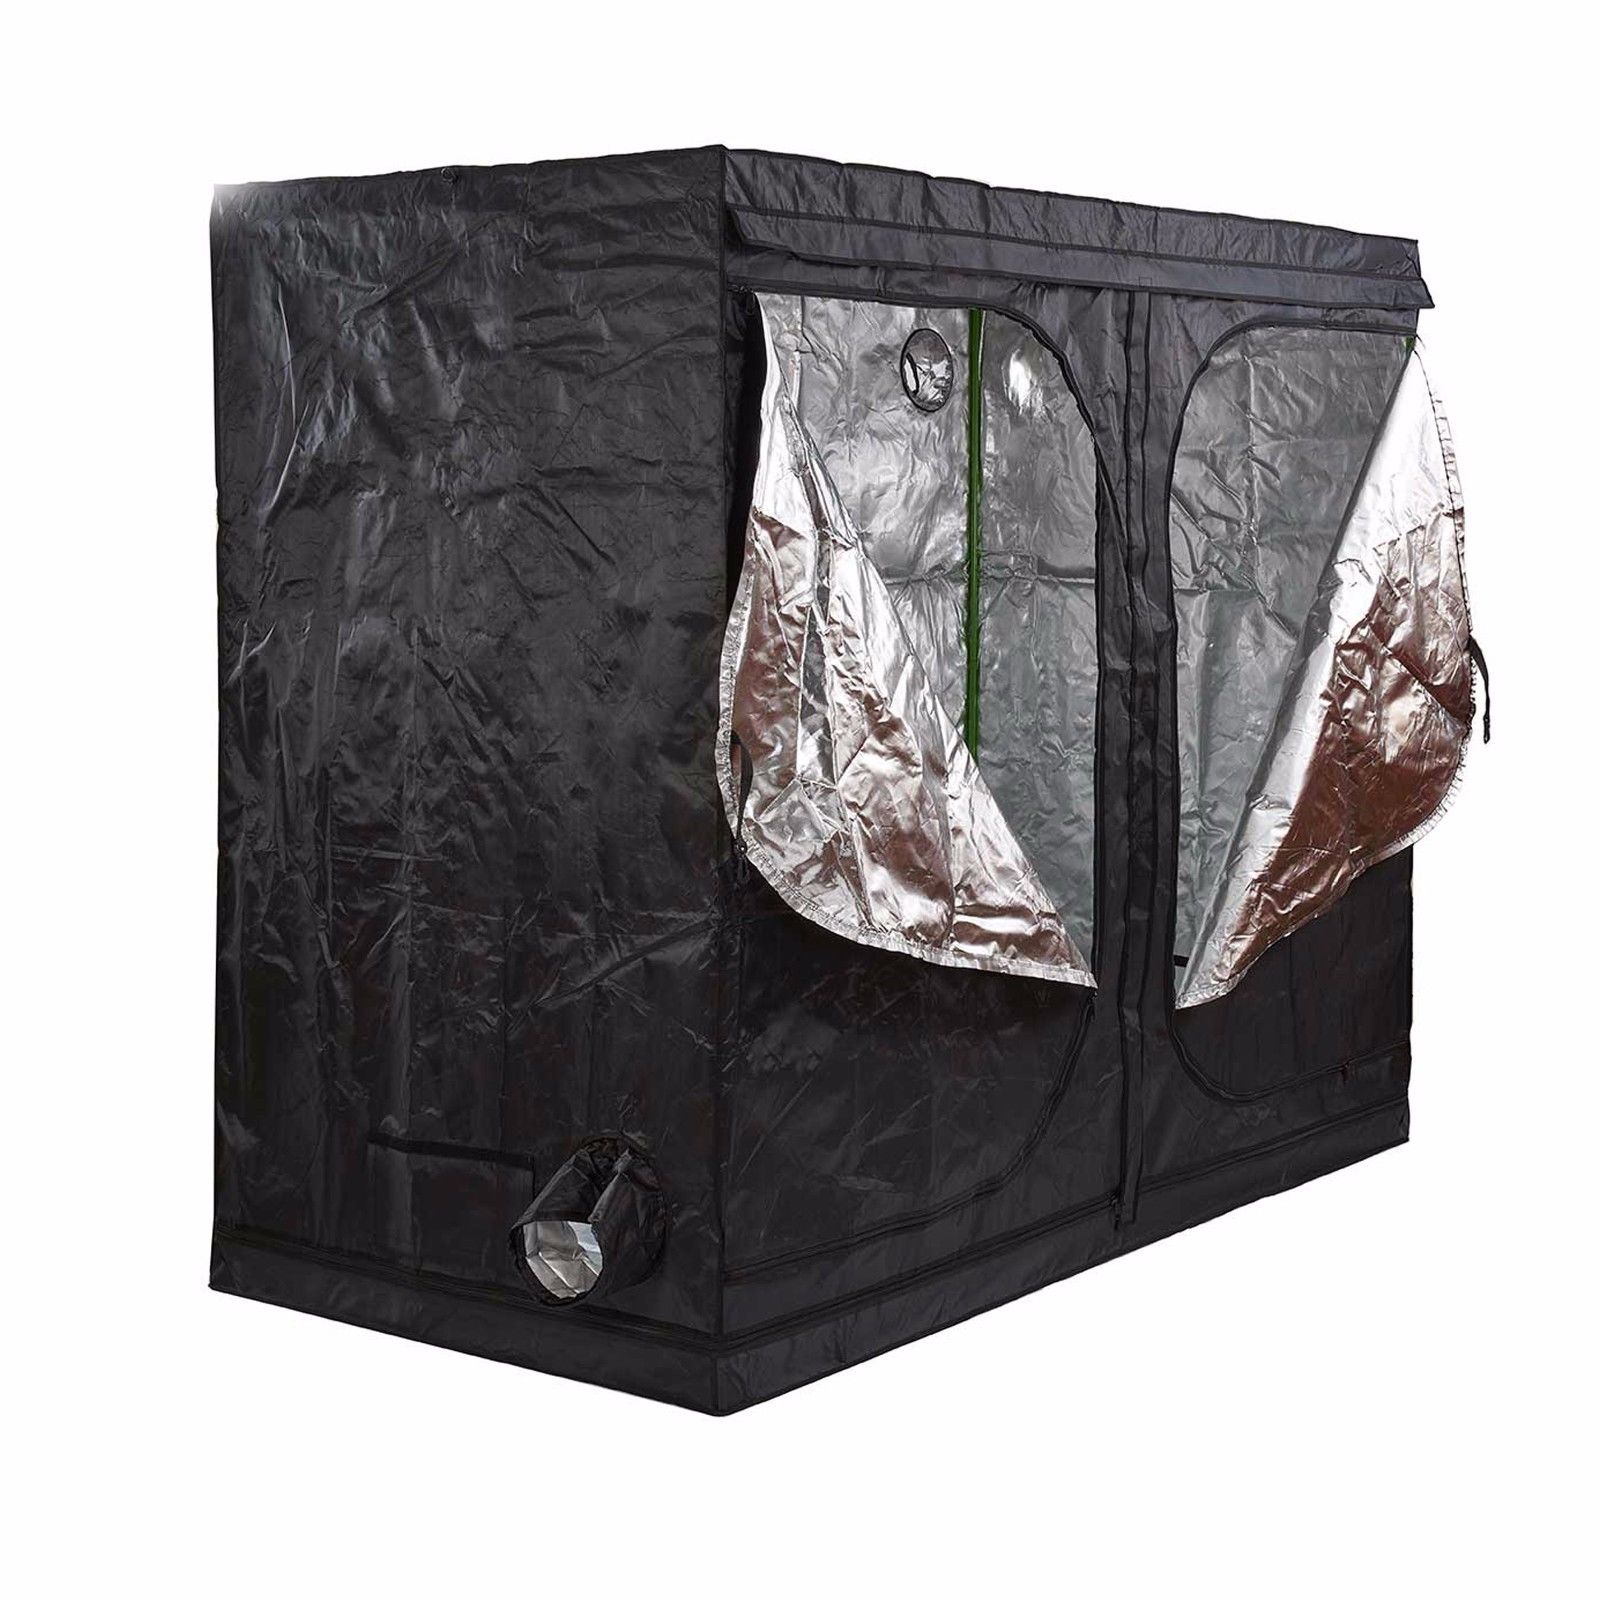 Premium 1.5m x 1.5m x 2m 600D Silver Mylar Grow Tent Box Hydroponics Dark Room 